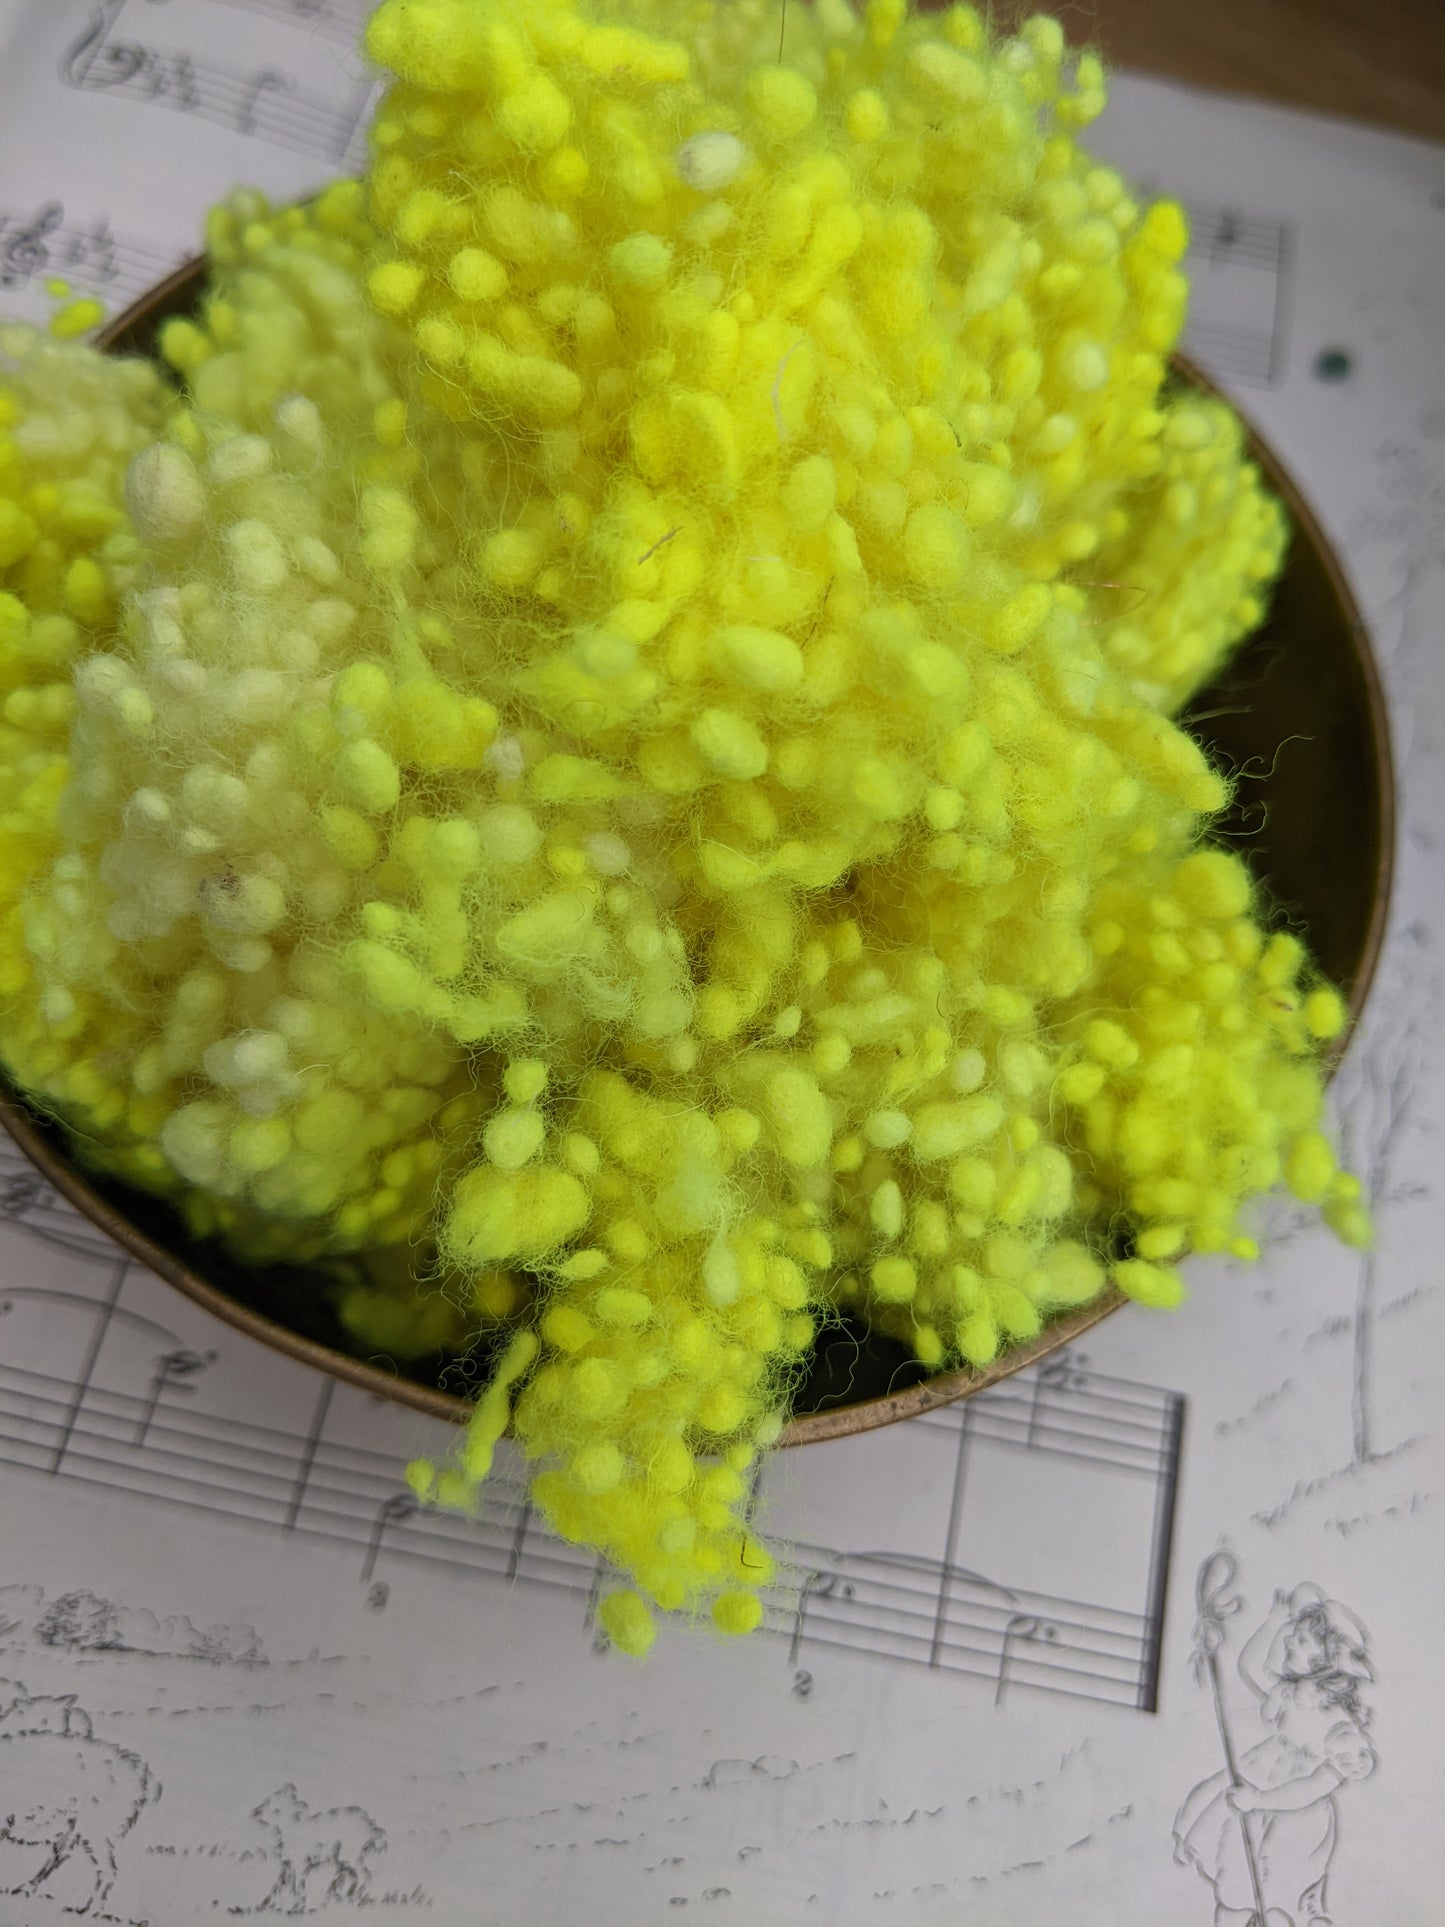 HANDEL Dyed Neon Yellow Fine Wool Nepps - 1 ounce